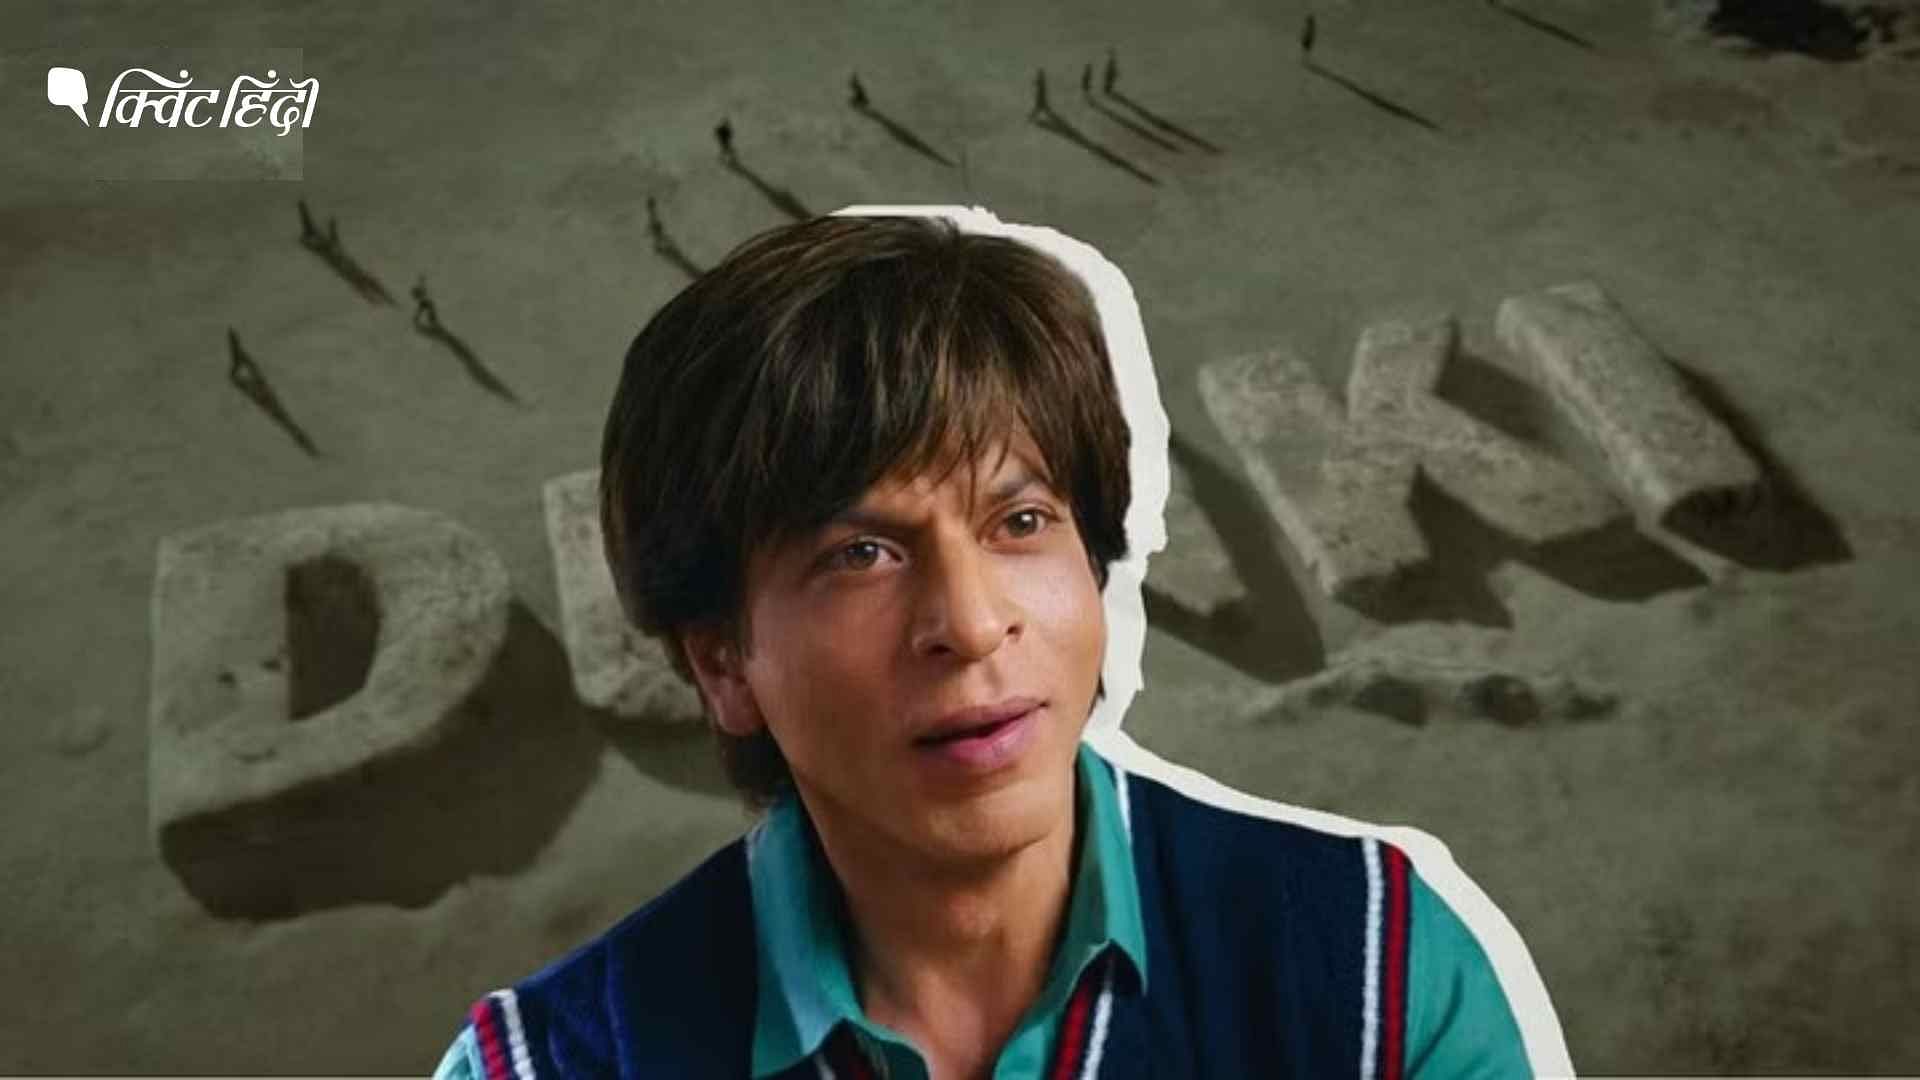 <div class="paragraphs"><p>Dunki: 'डंकी फ्लाइट' पर आधारित शाहरुख खान की फिल्म, अवैध रूप से कैसे जाते हैं विदेश?</p></div>